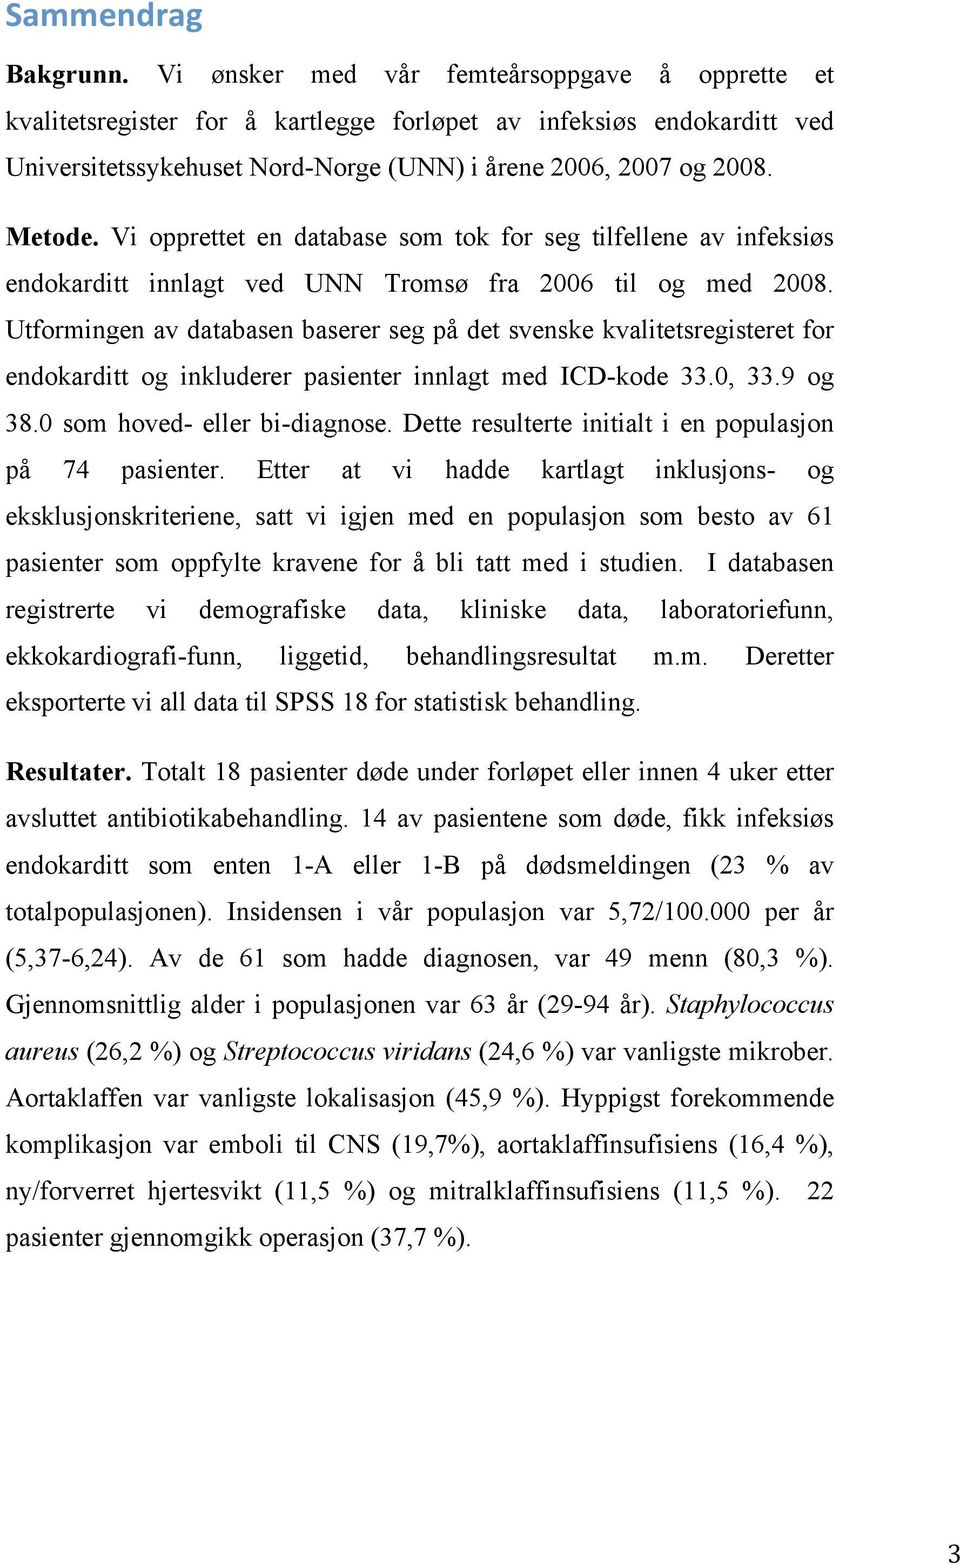 Vi opprettet en database som tok for seg tilfellene av infeksiøs endokarditt innlagt ved UNN Tromsø fra 2006 til og med 2008.